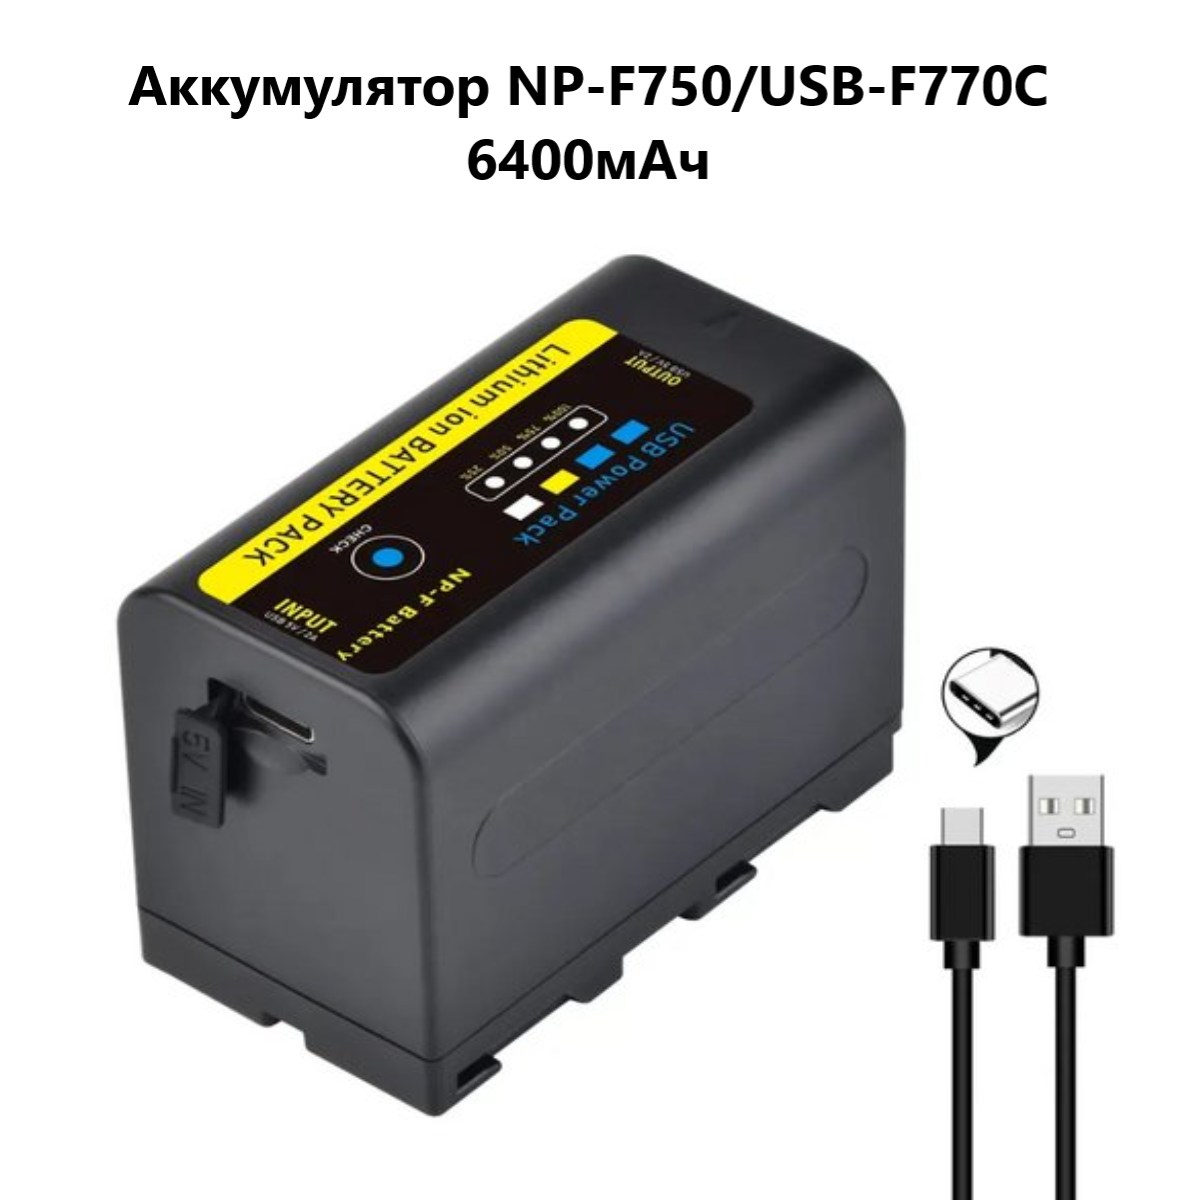 Аккумулятор ABC для видеокамер Sony NP-F750 светодиодных осветителей Power Bank USB-F770C / 6400мАч